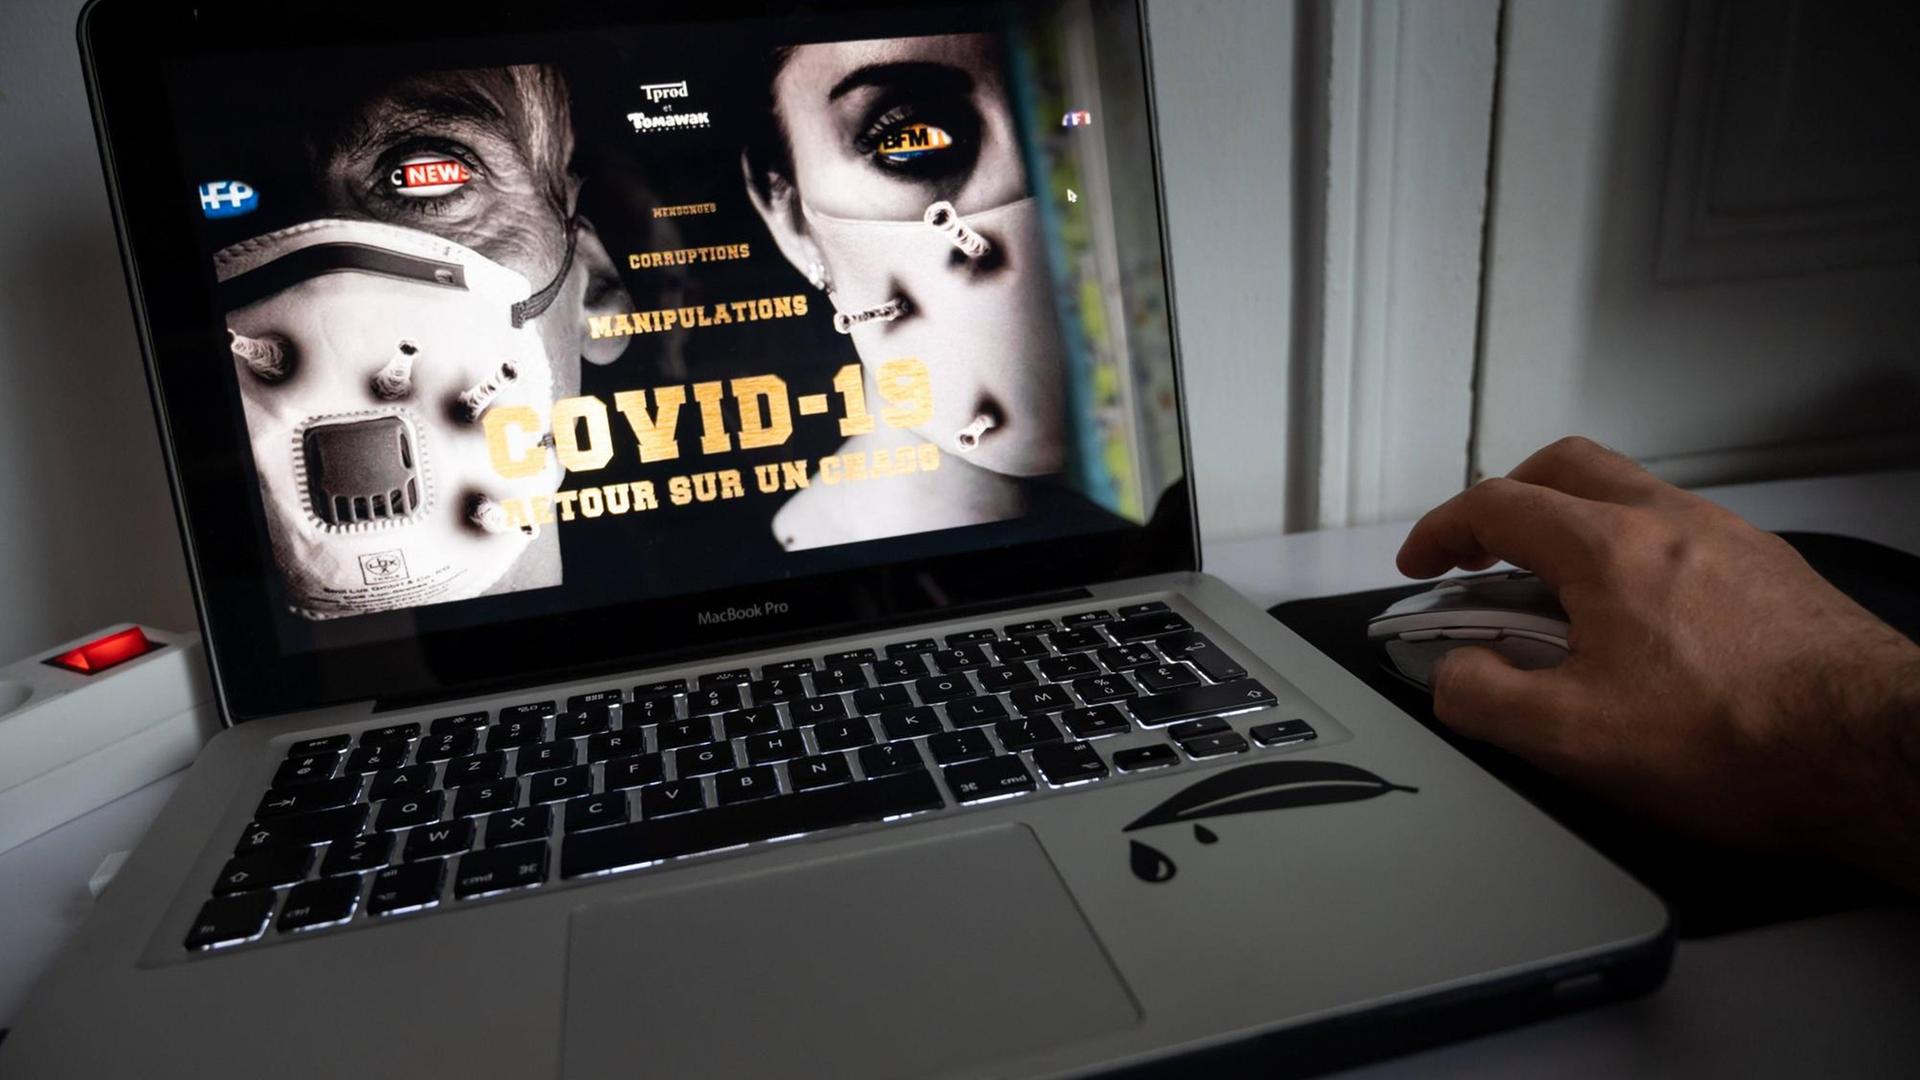 Ein Laptop hat den Streaming-Film "Hold Up" des früheren französischen Journalisten Pierre Barnérias geladen, der angeblich die Wahrheit über Covid-19 erzählt. Auf dem Bildschirm sieht man recht und links je ein Gesicht mit Maske und in der Mitte steht "Covid-19 - Retour sur un chaos" (Blick auf ein Chaos).